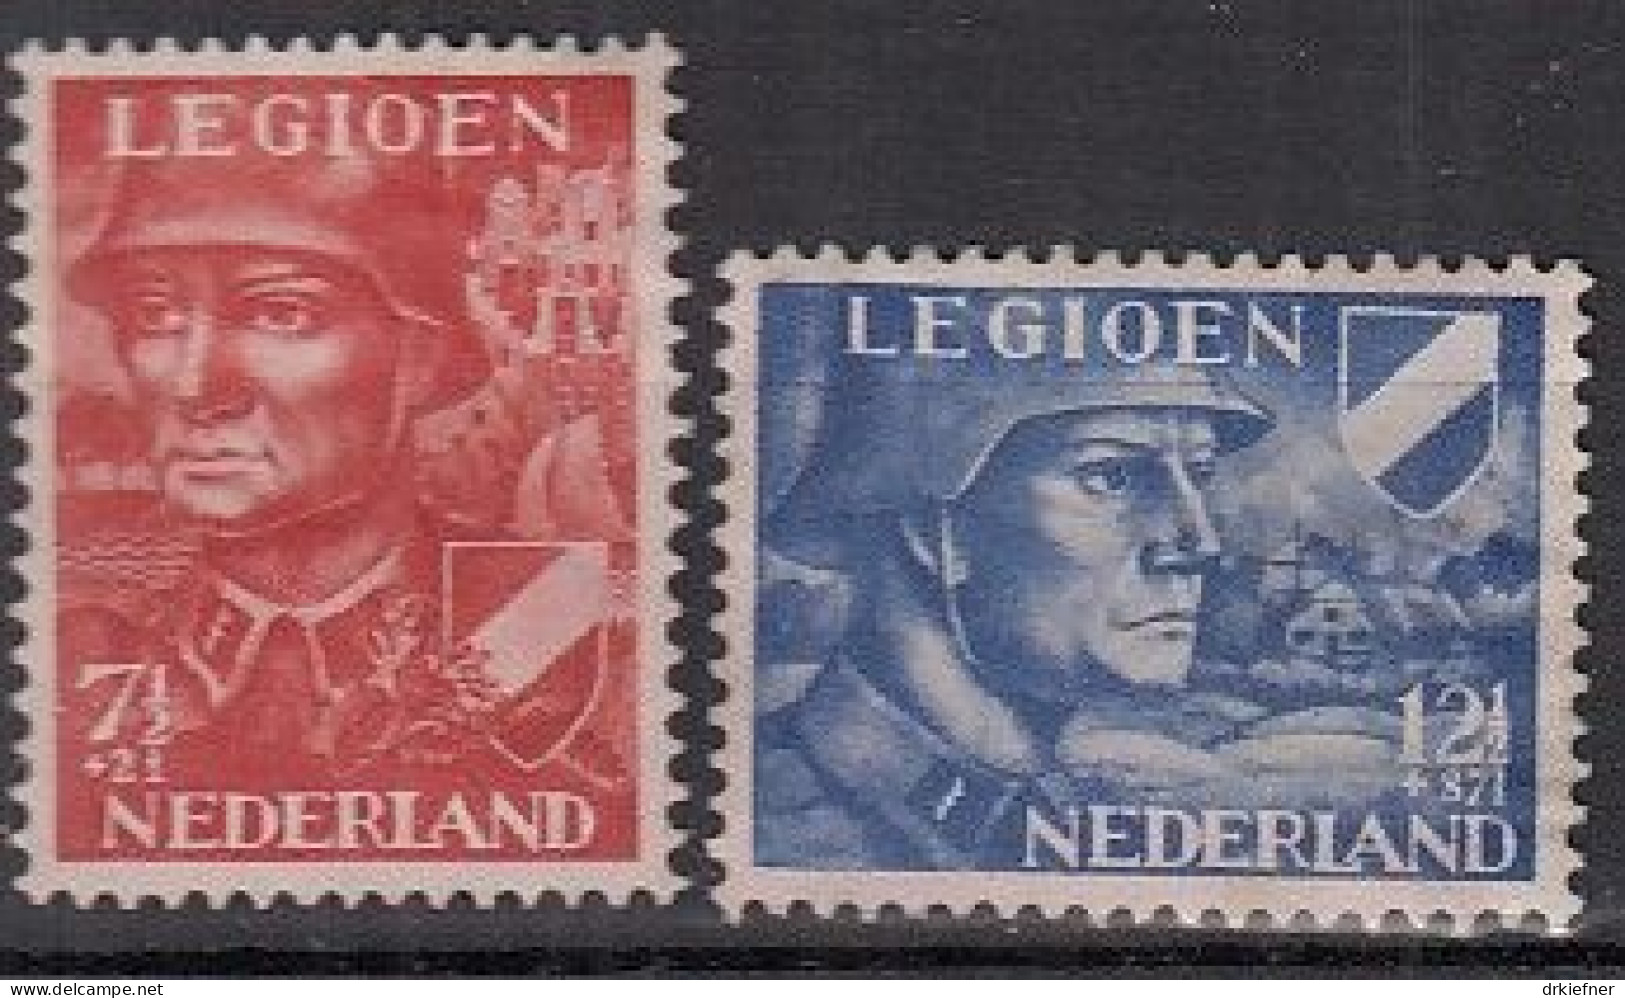 NIEDERLANDE 402-403, Postfrisch **, Niederländische Legion, 1942 - Ungebraucht